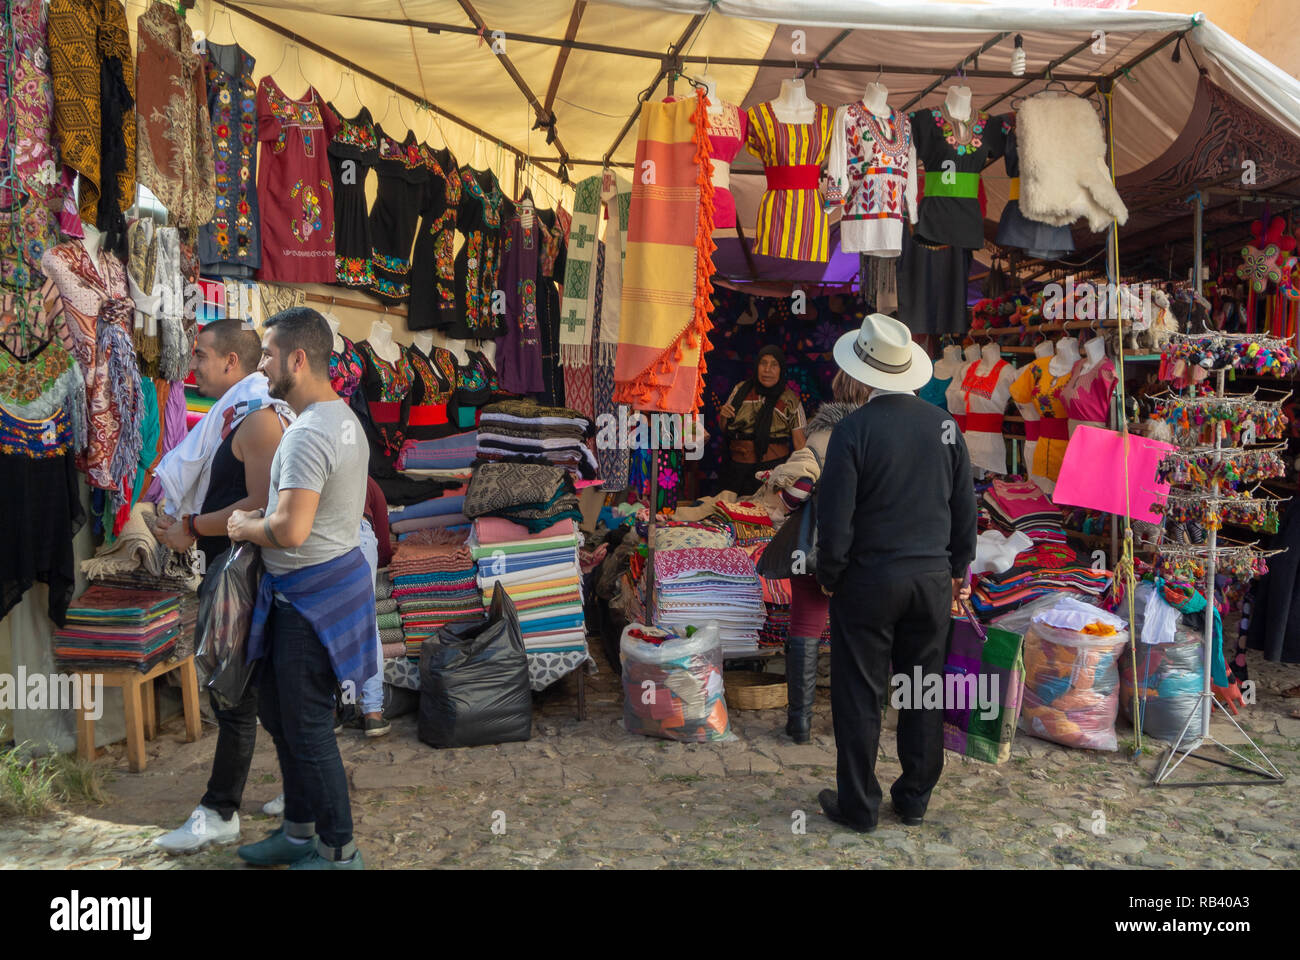 Tourists at mercado de artesanias, market, San Cristobal de las Casas, Chiapas, Mexico Stock Photo